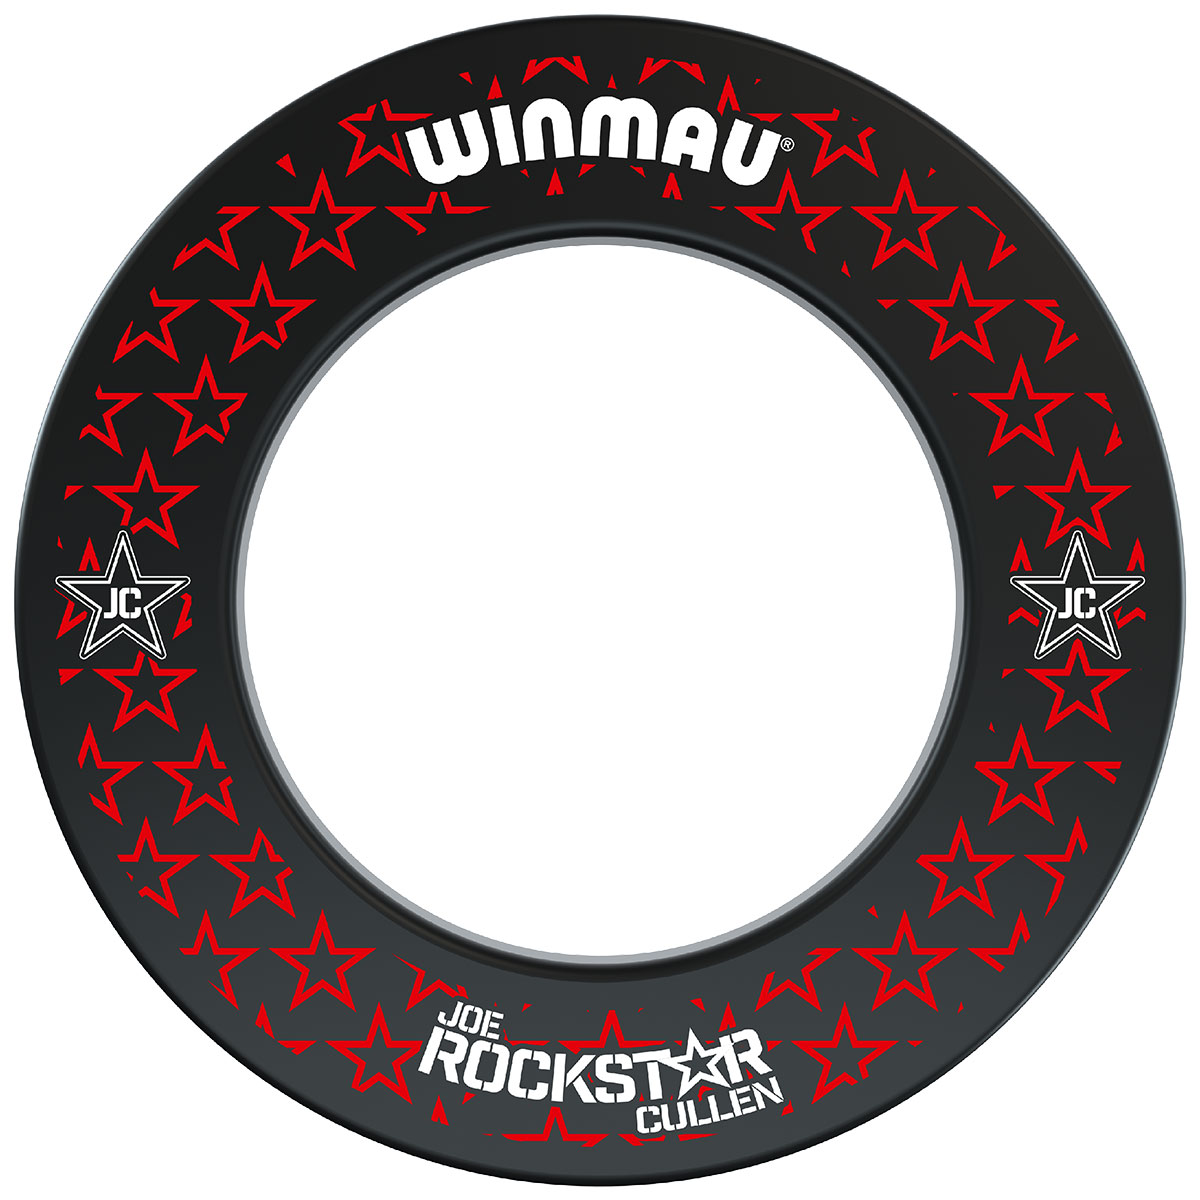 Winmau Joe Cullen Rockstar Rubber Dartboard Surround